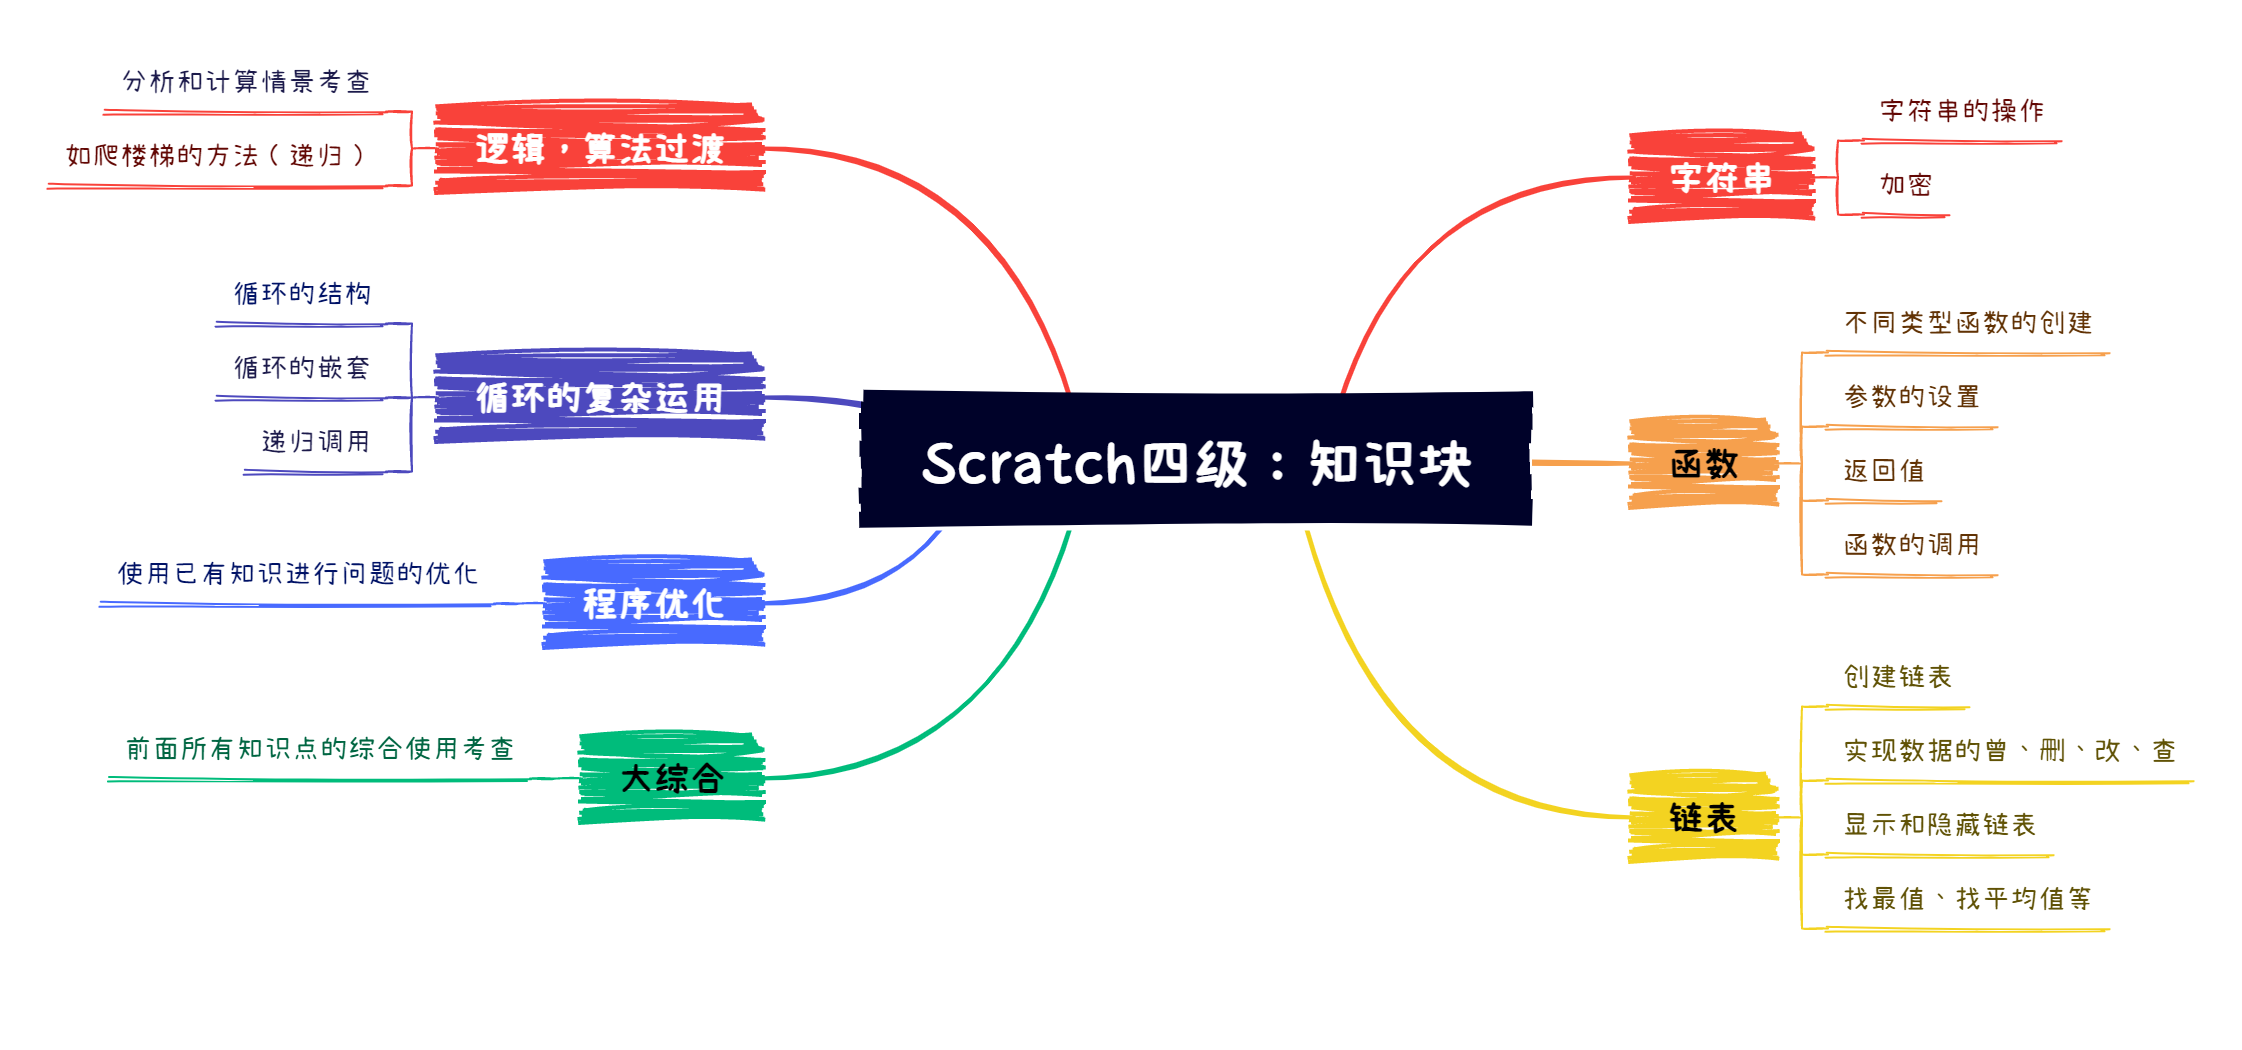 【编程题】【Scratch四级】2021.06 从小到大排序